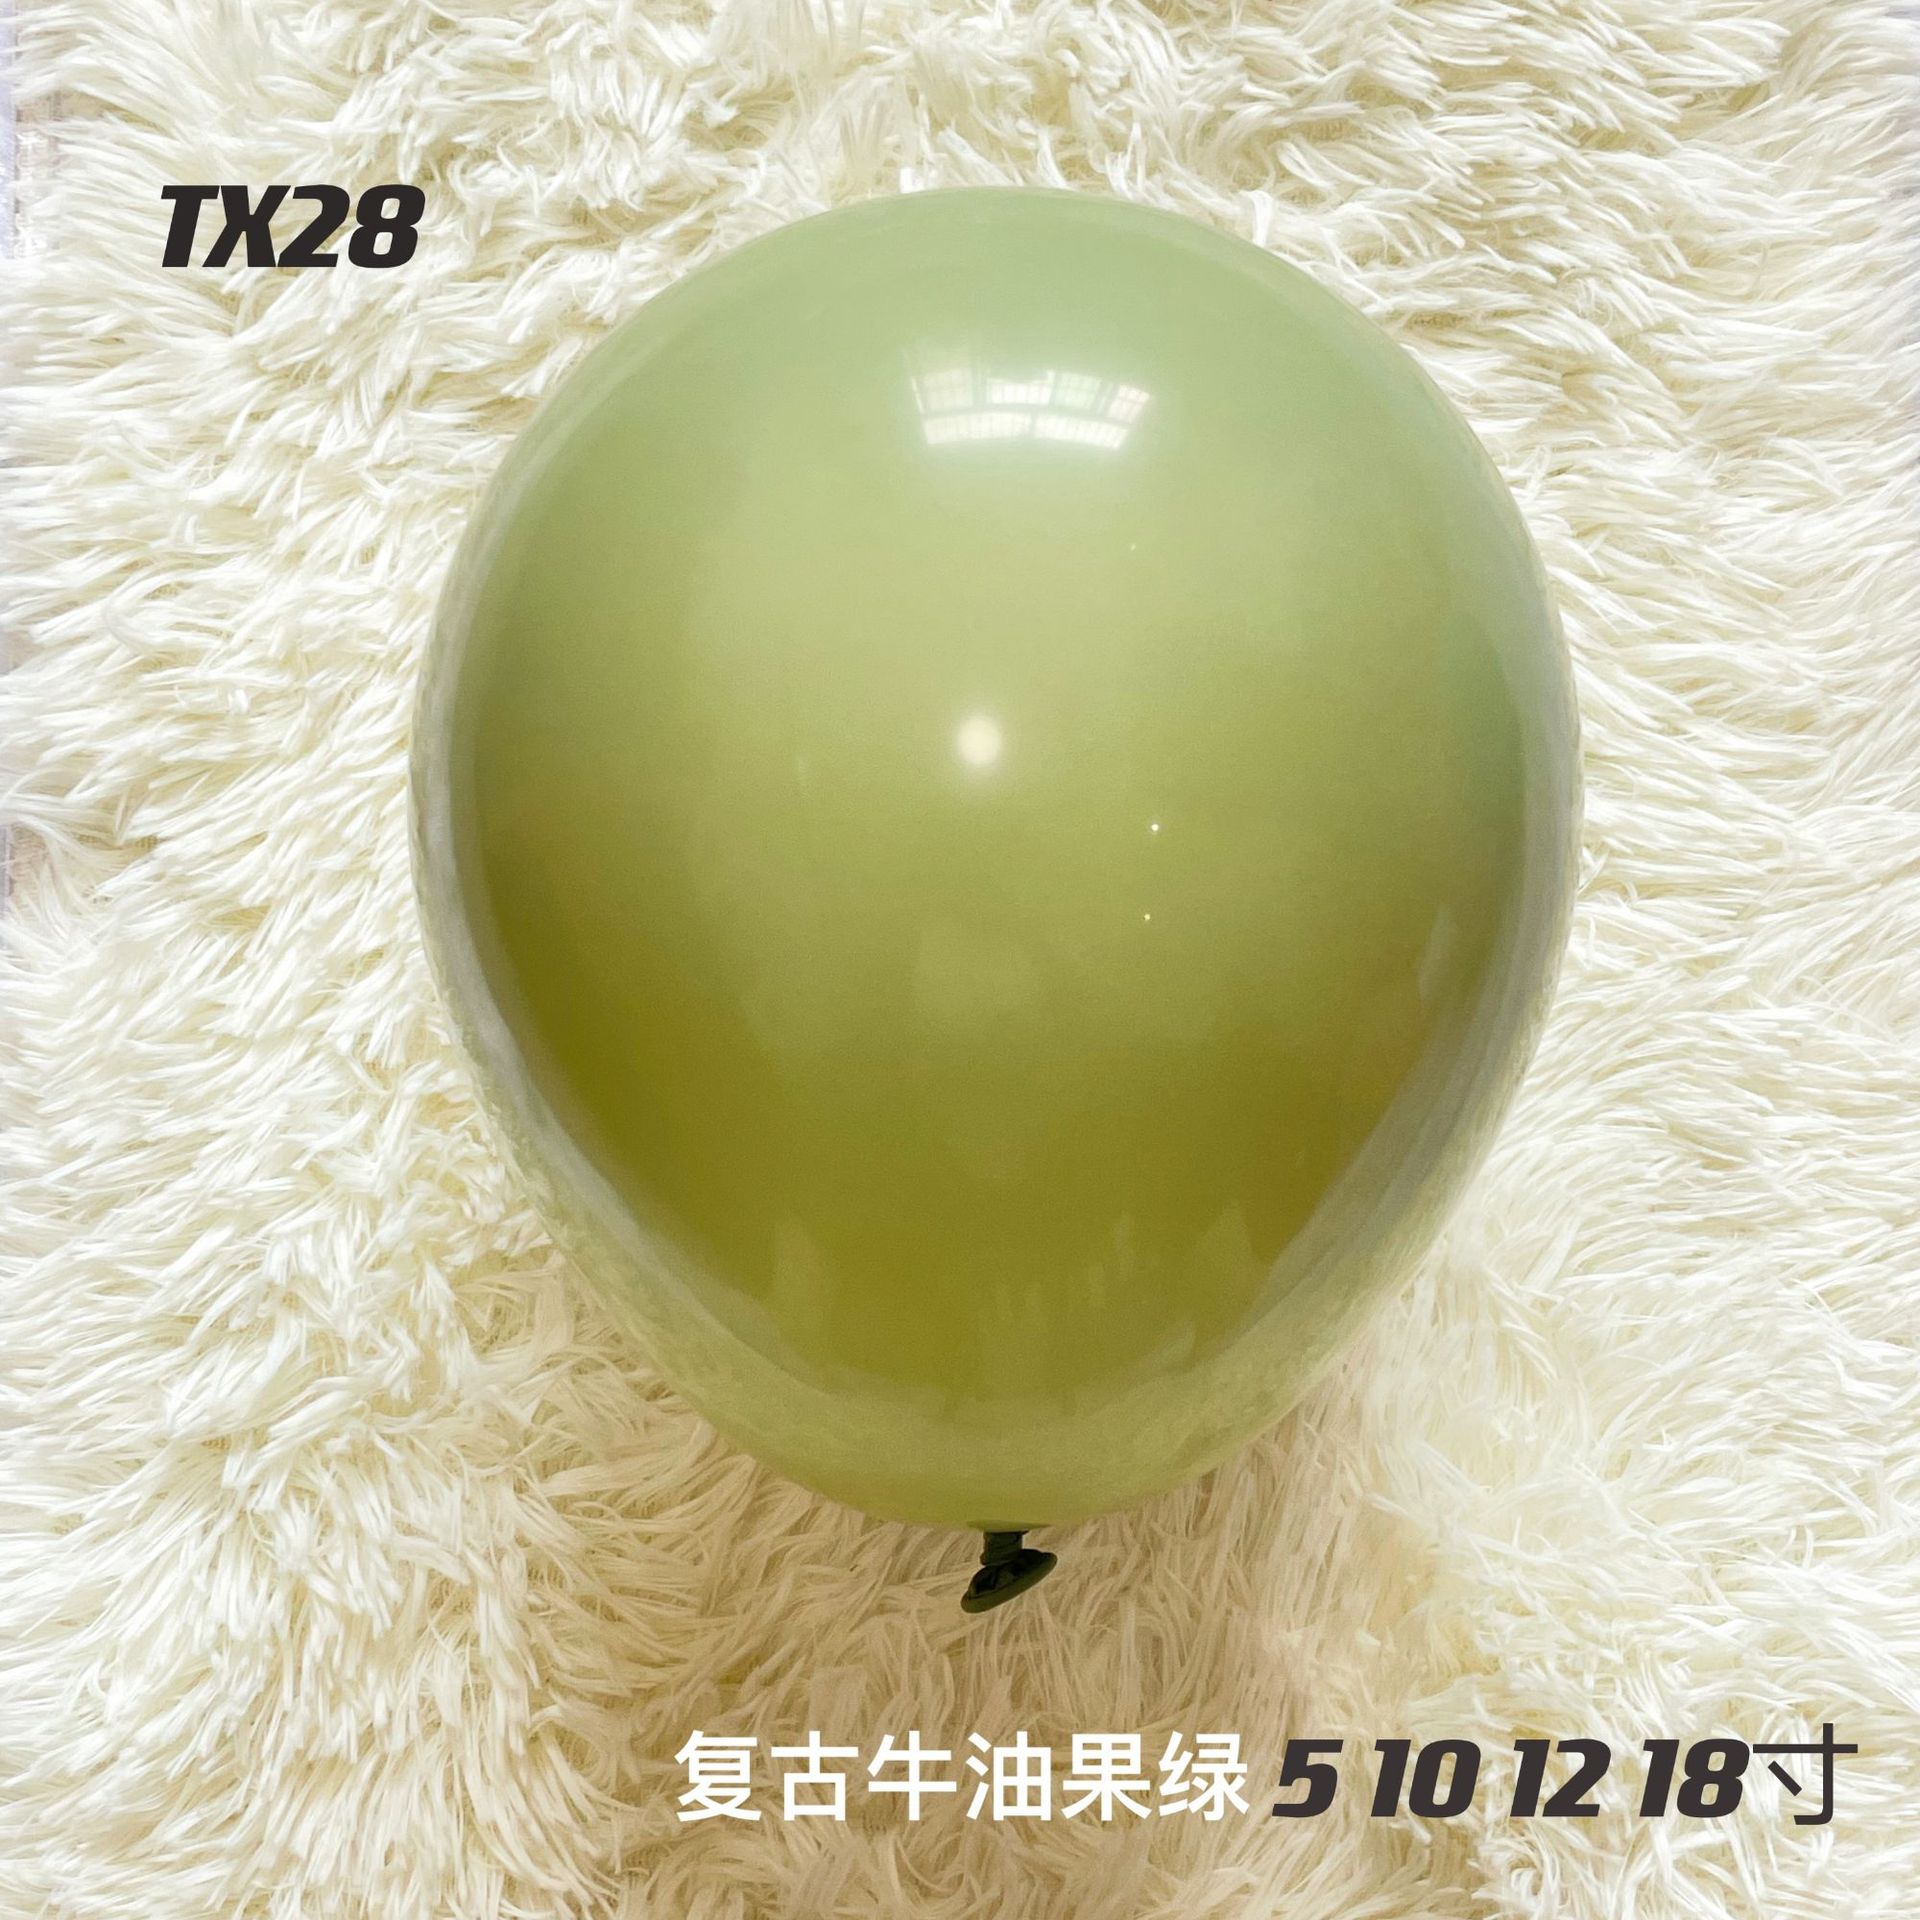 彤萱厂家供应12寸2.8g复古色系气球 批发零售直销亚马逊 量大从优详情9